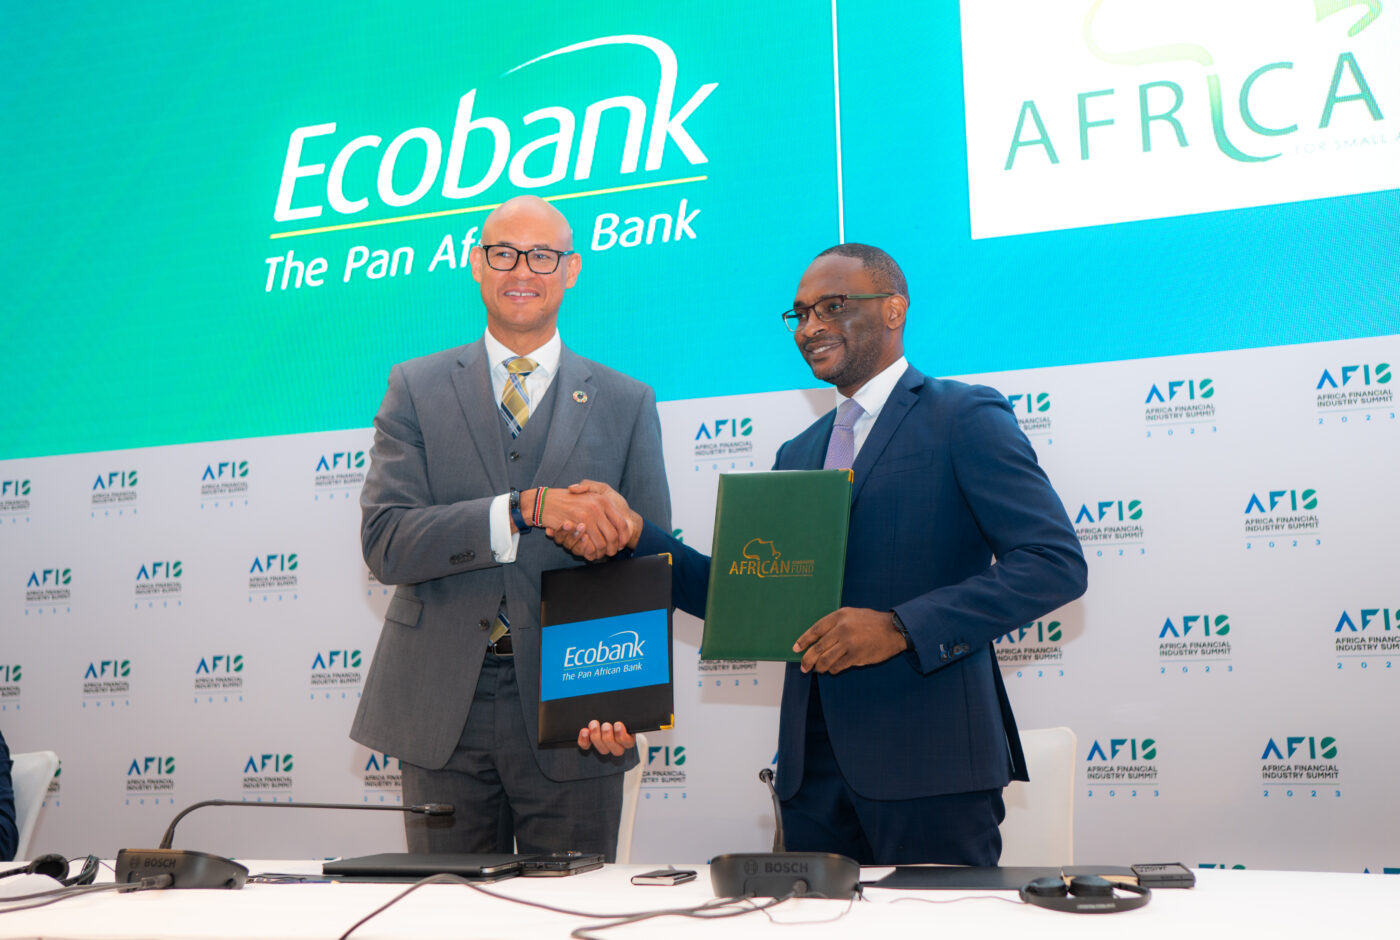 Le Groupe Ecobank et African Guarantee Fund Signent Un Accord Transformateur De Partage Des Risques D'un Montant De 200 millions USD